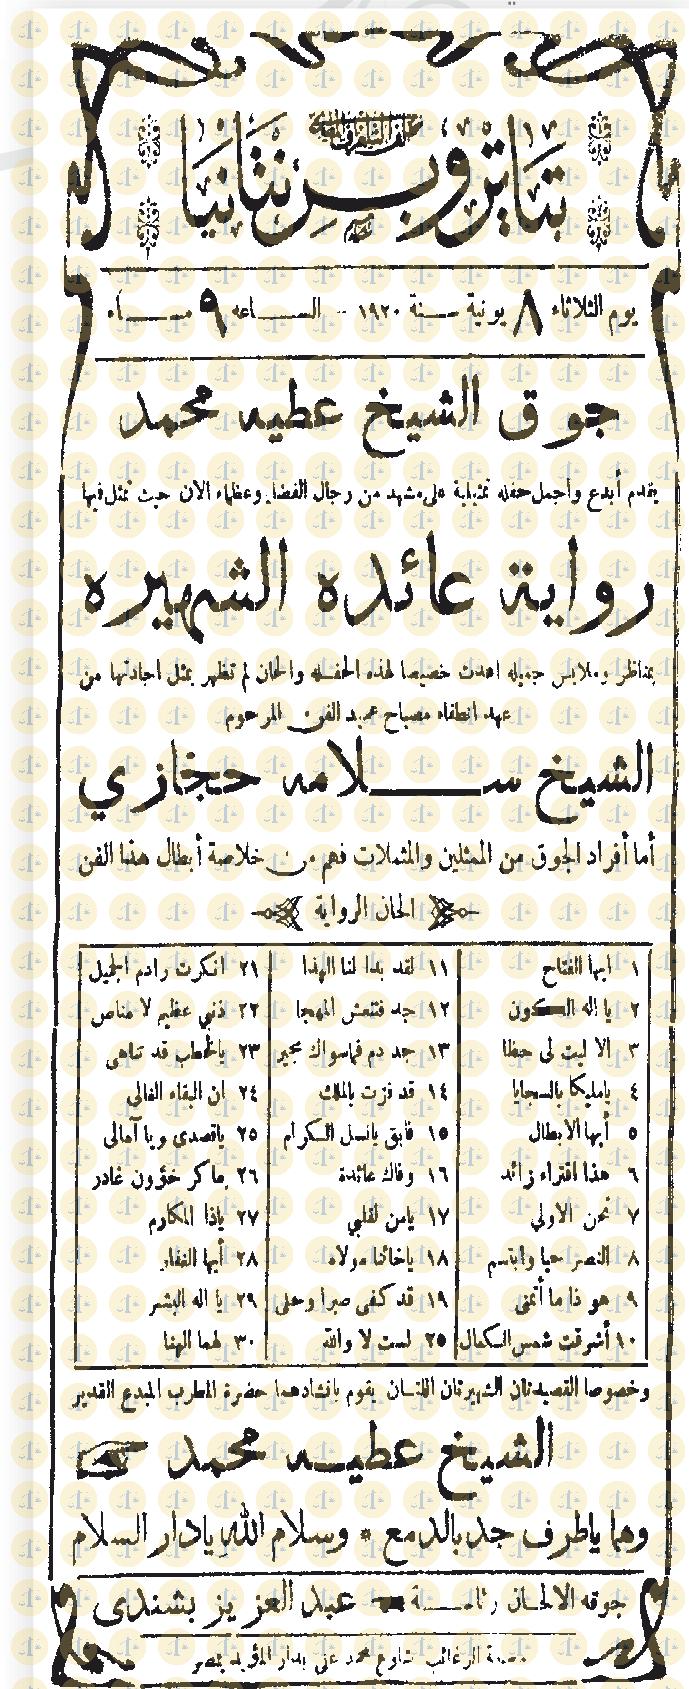 إعلان مسرحية عايدة، فرقة الشيخ عطية محمد، 1920م